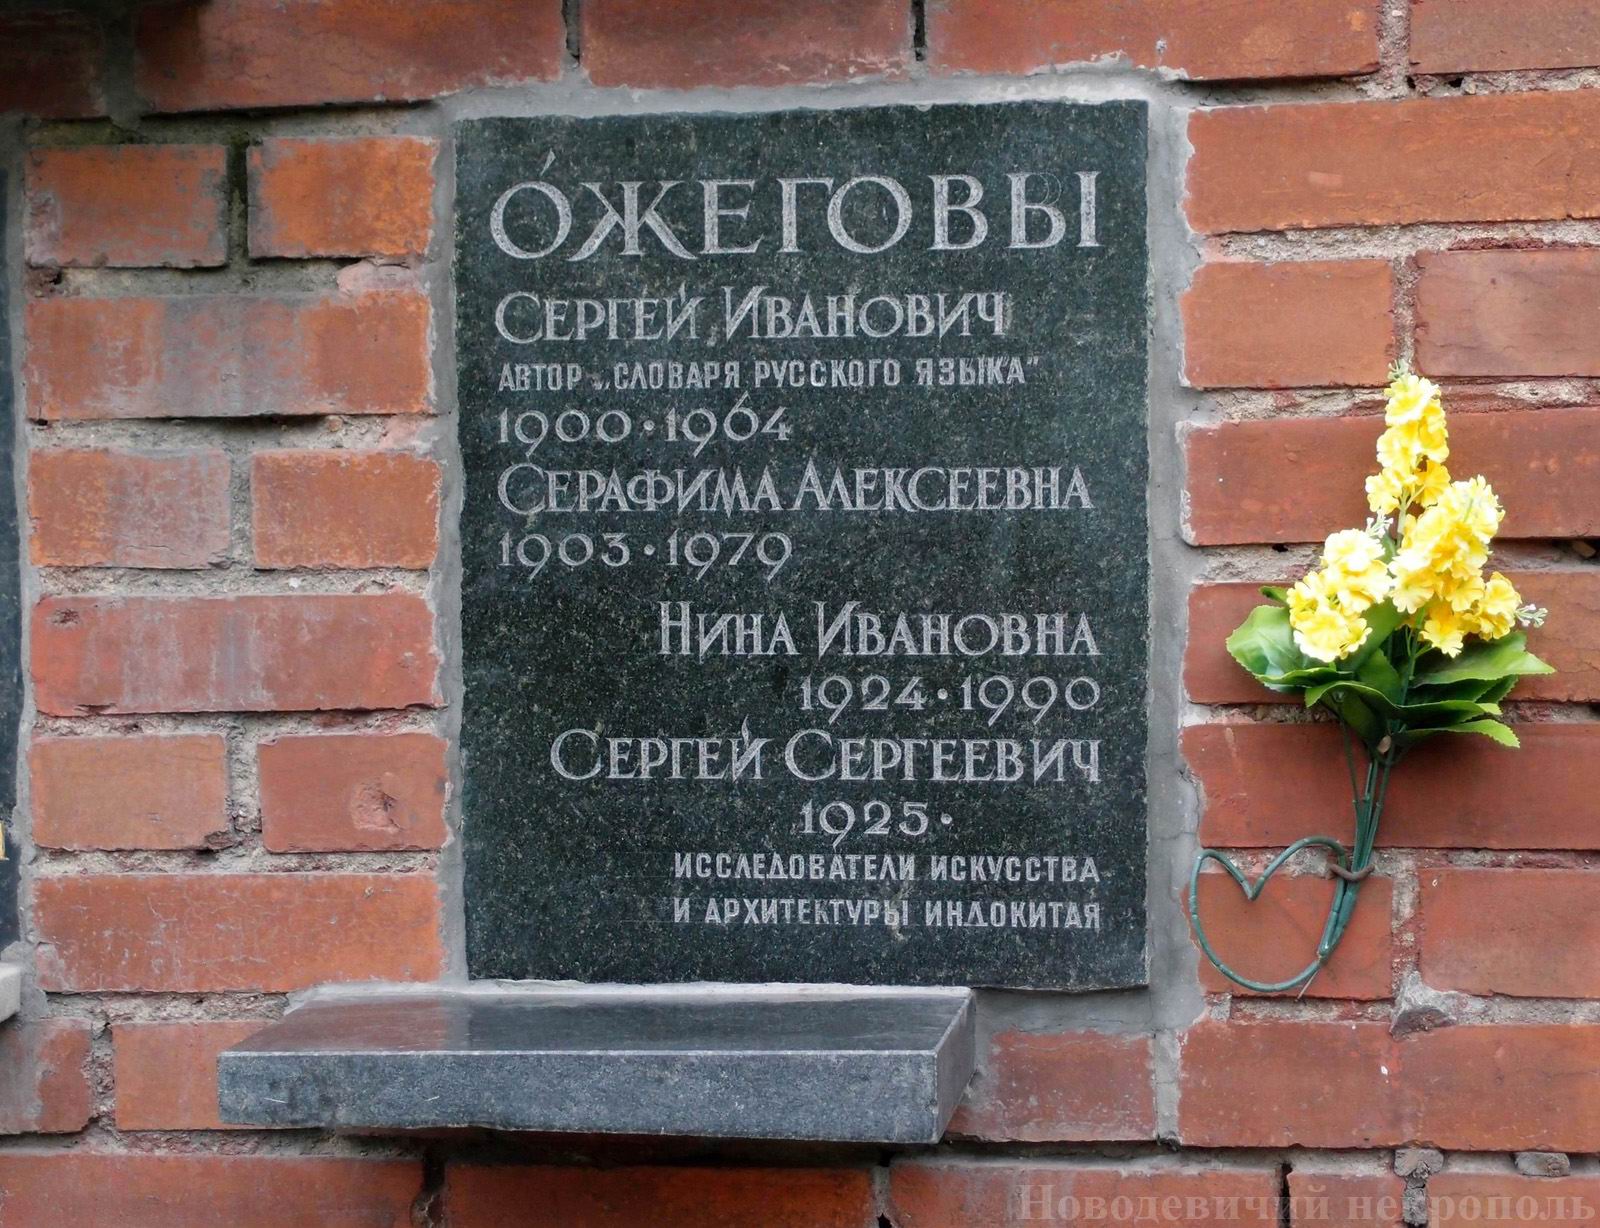 Плита на нише Ожегова С.И. (1900–1964), на Новодевичьем кладбище (колумбарий [127]–27–3).